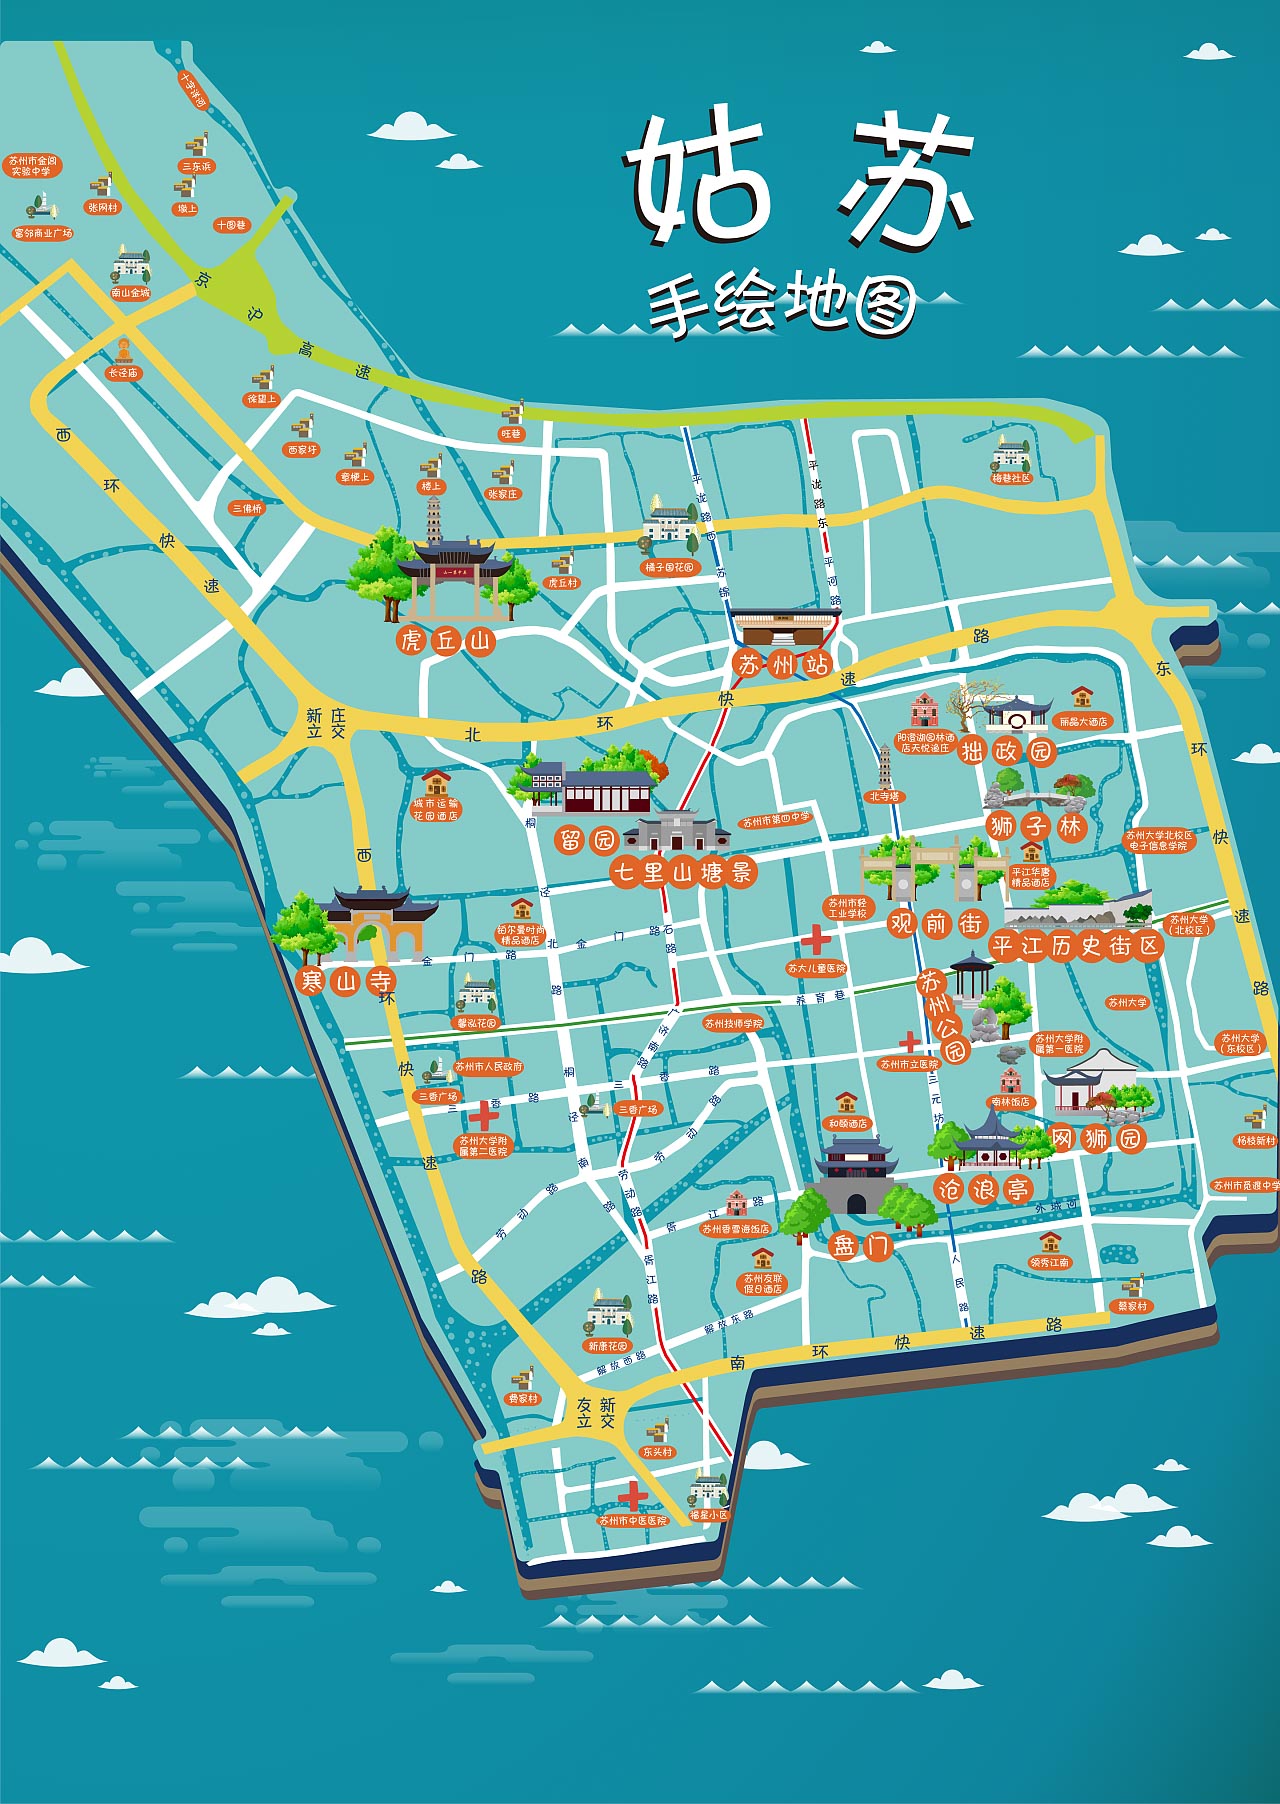 万江街道手绘地图景区的文化宝藏